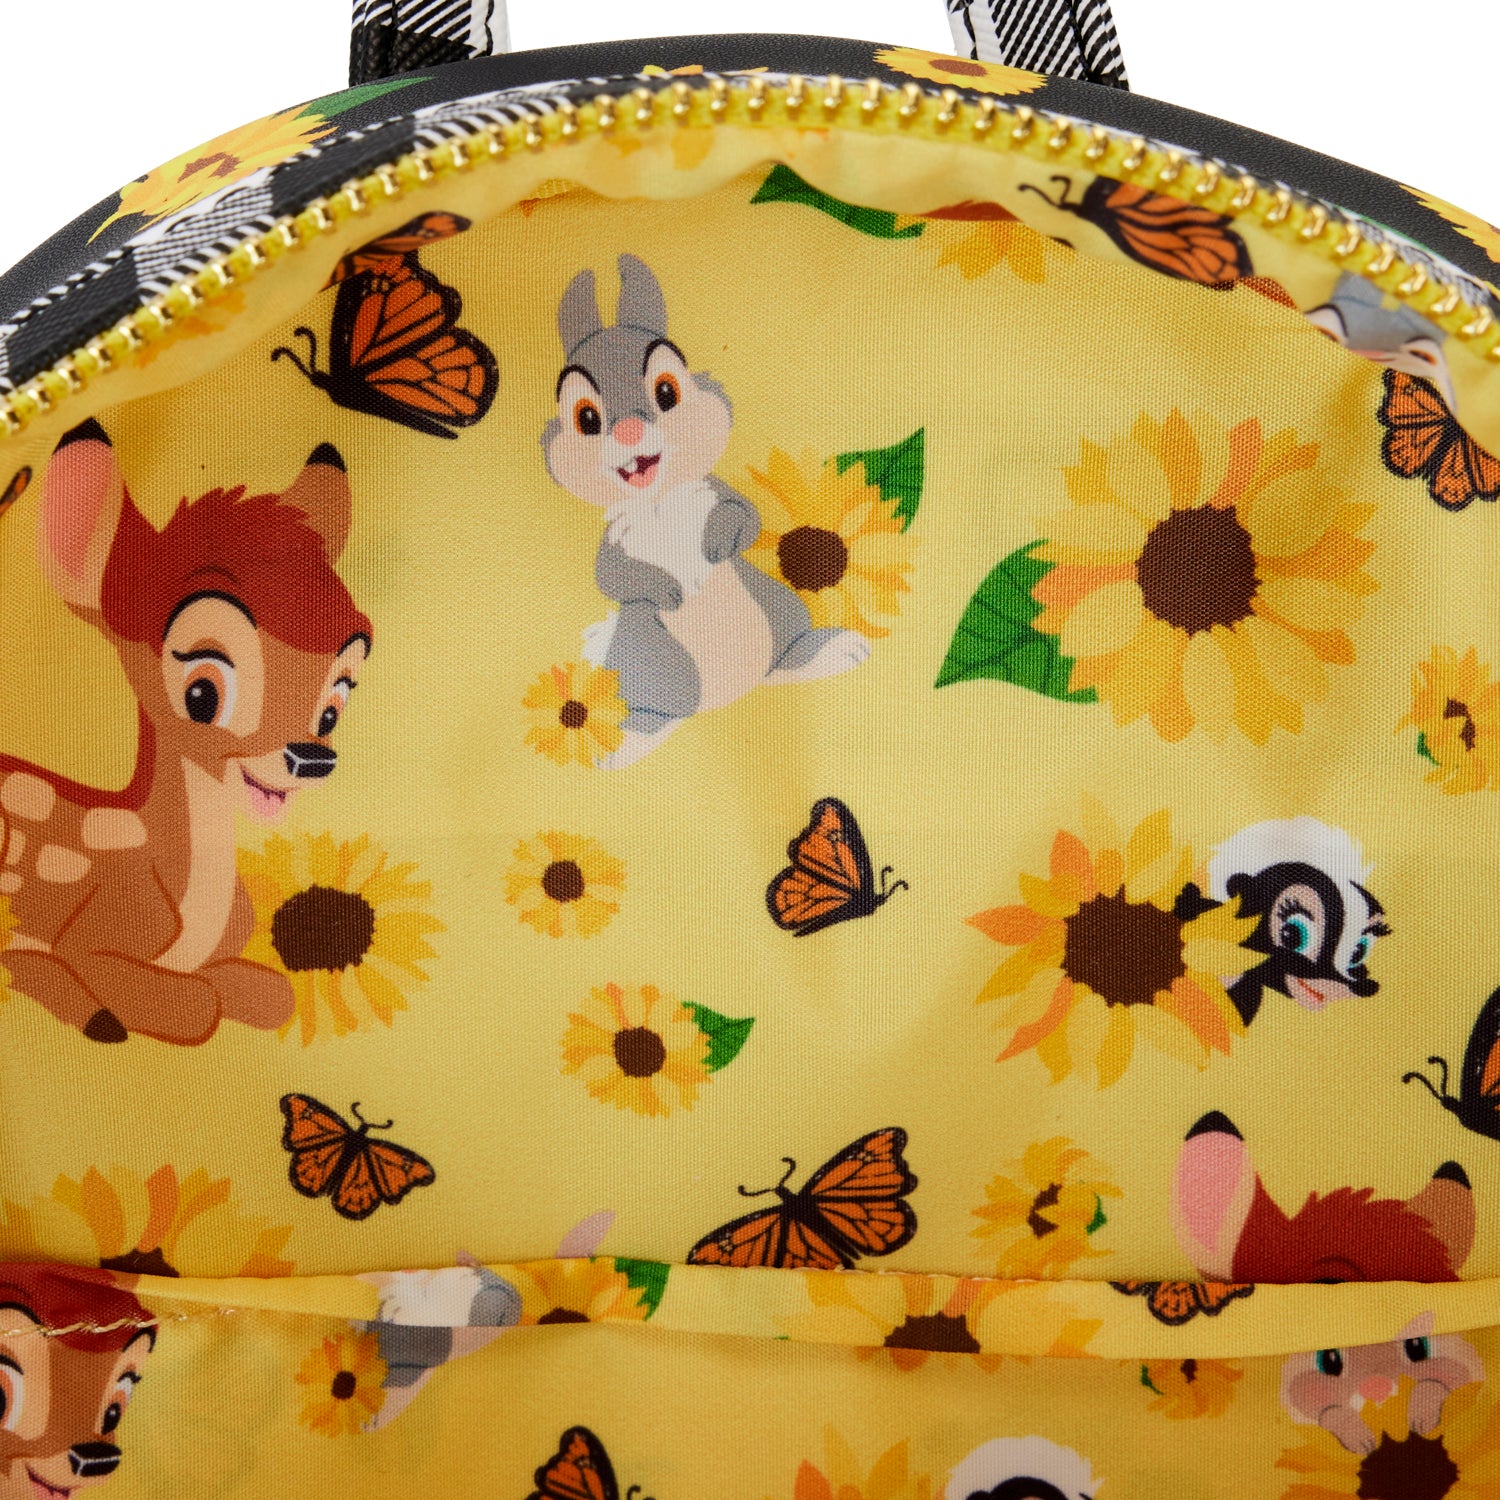 Disney | Bambi Sunflower Friends Mini Backpack